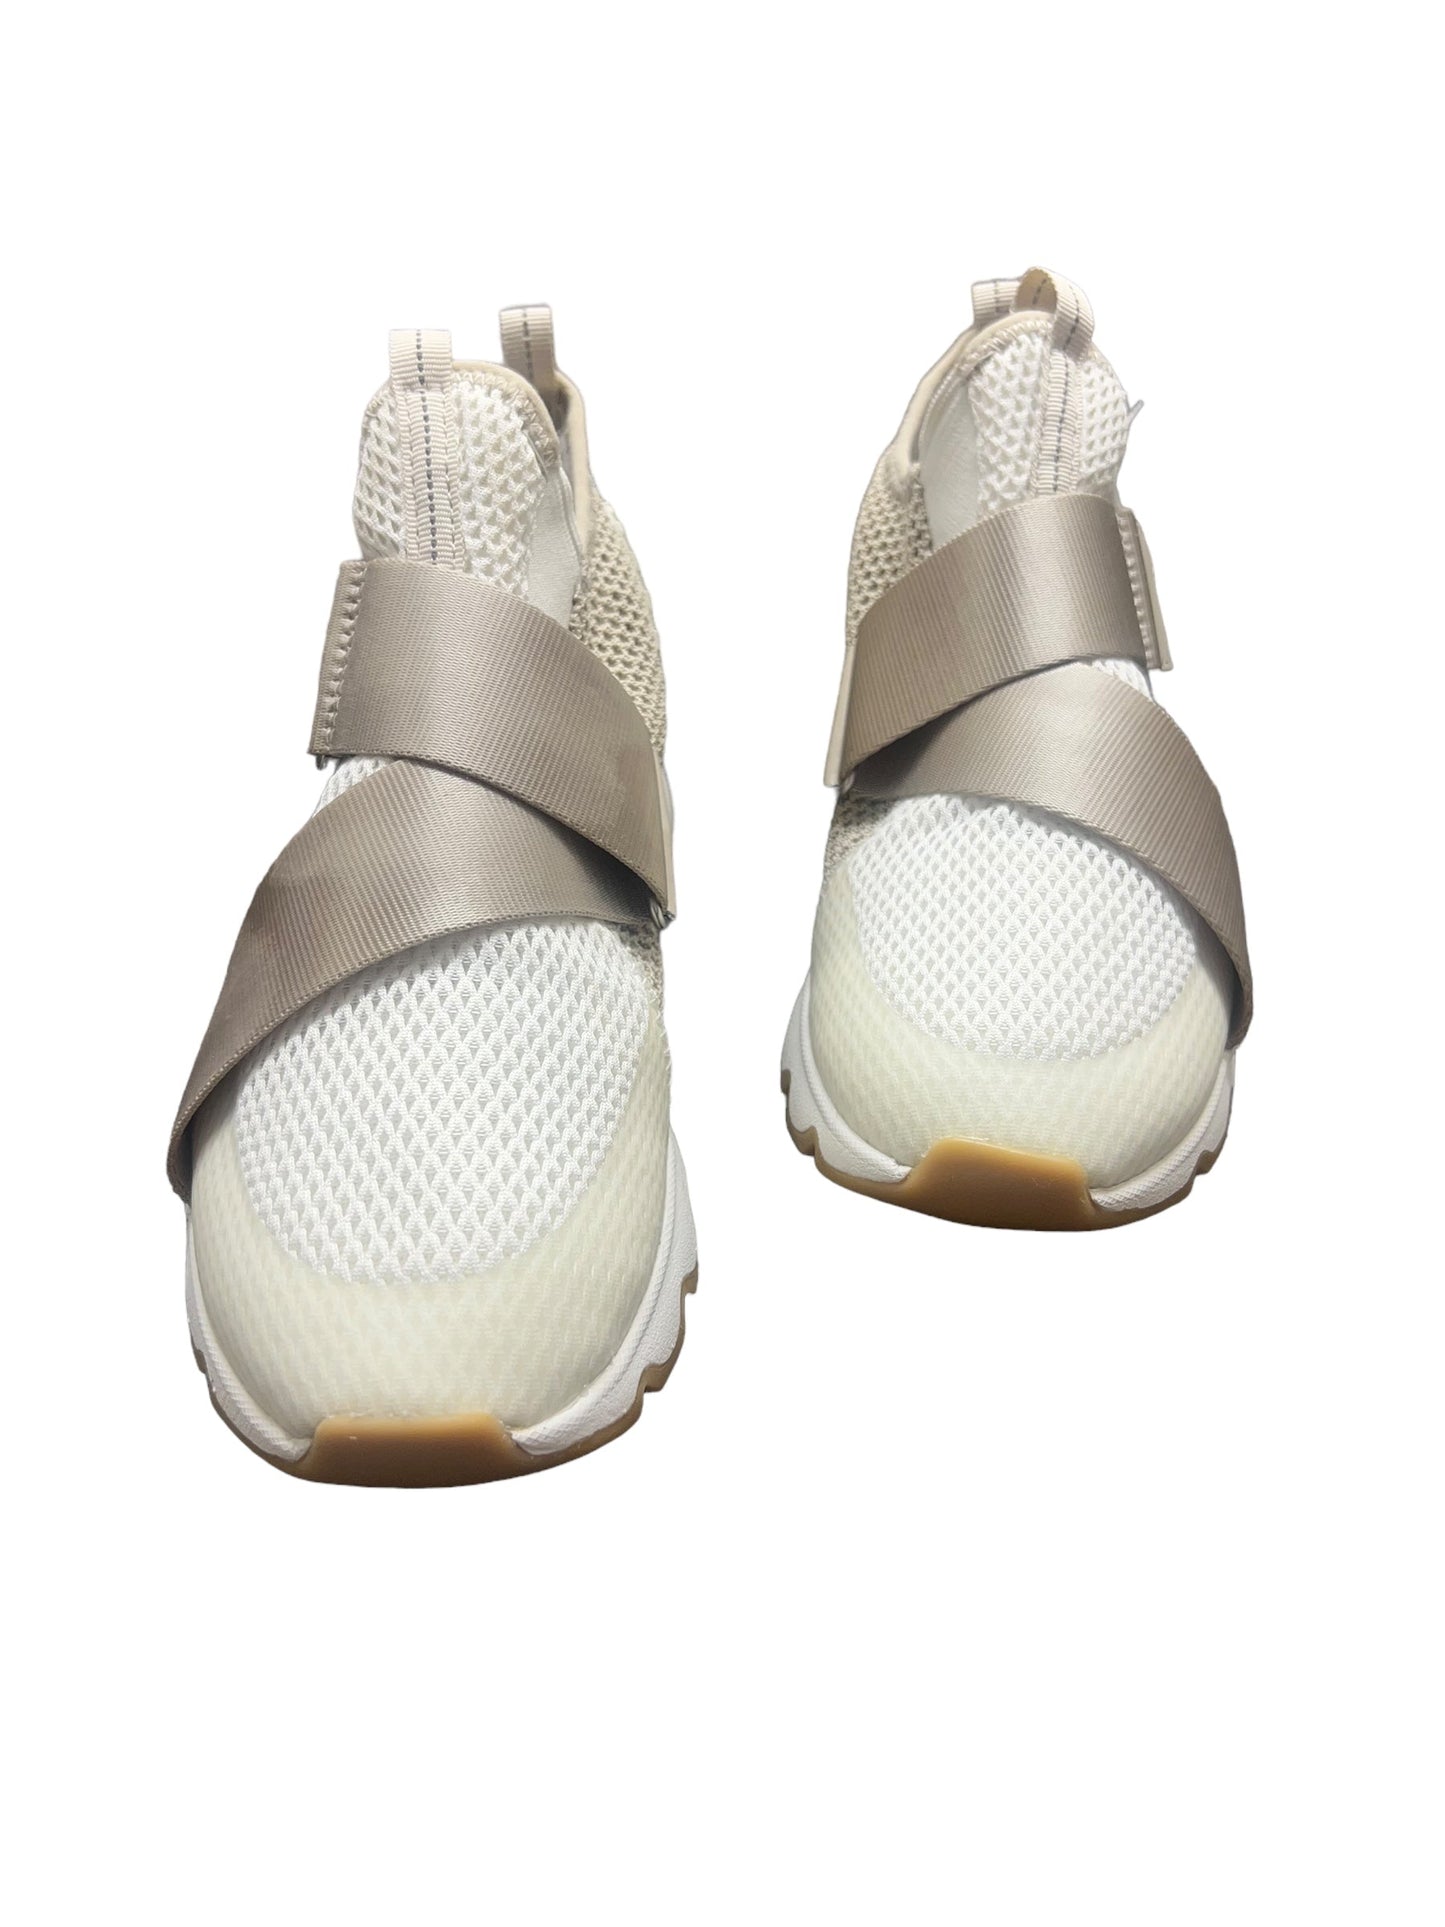 Tan & White Shoes Sneakers Sorel, Size 8